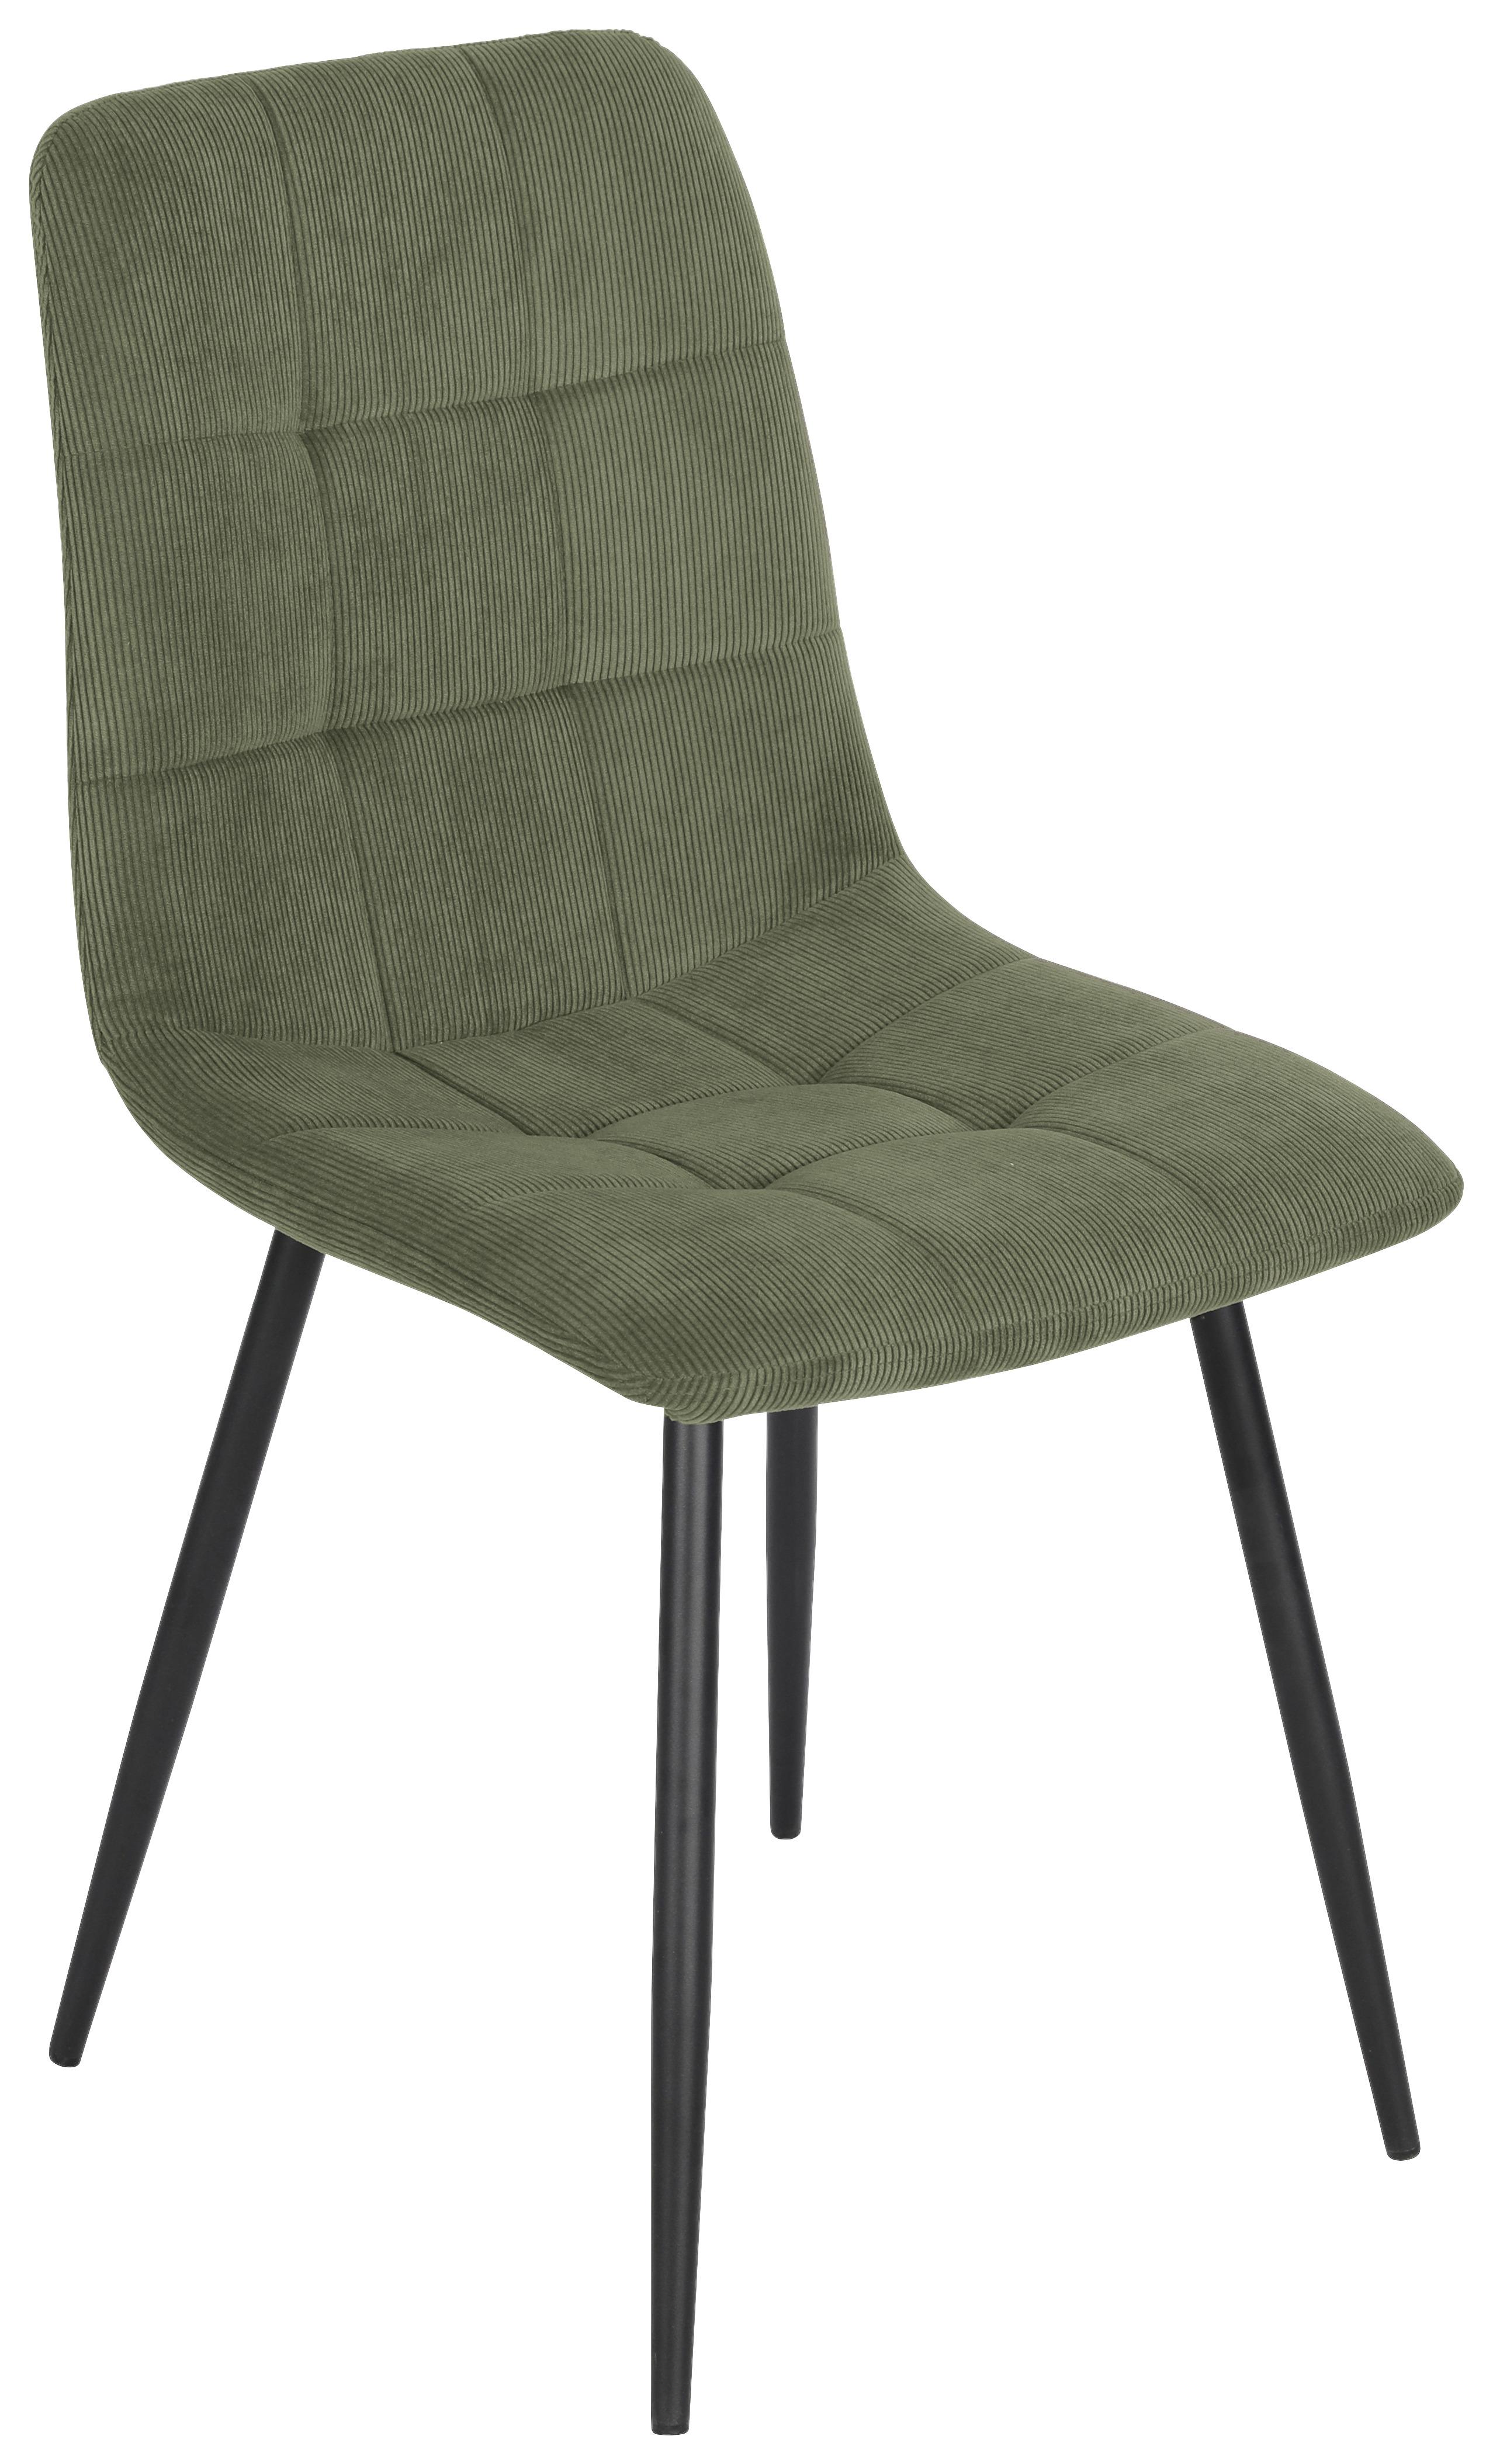 Stuhl aus Kord in Grün - Schwarz/Grün, Modern, Holz/Textil (45/87/57cm) - Modern Living